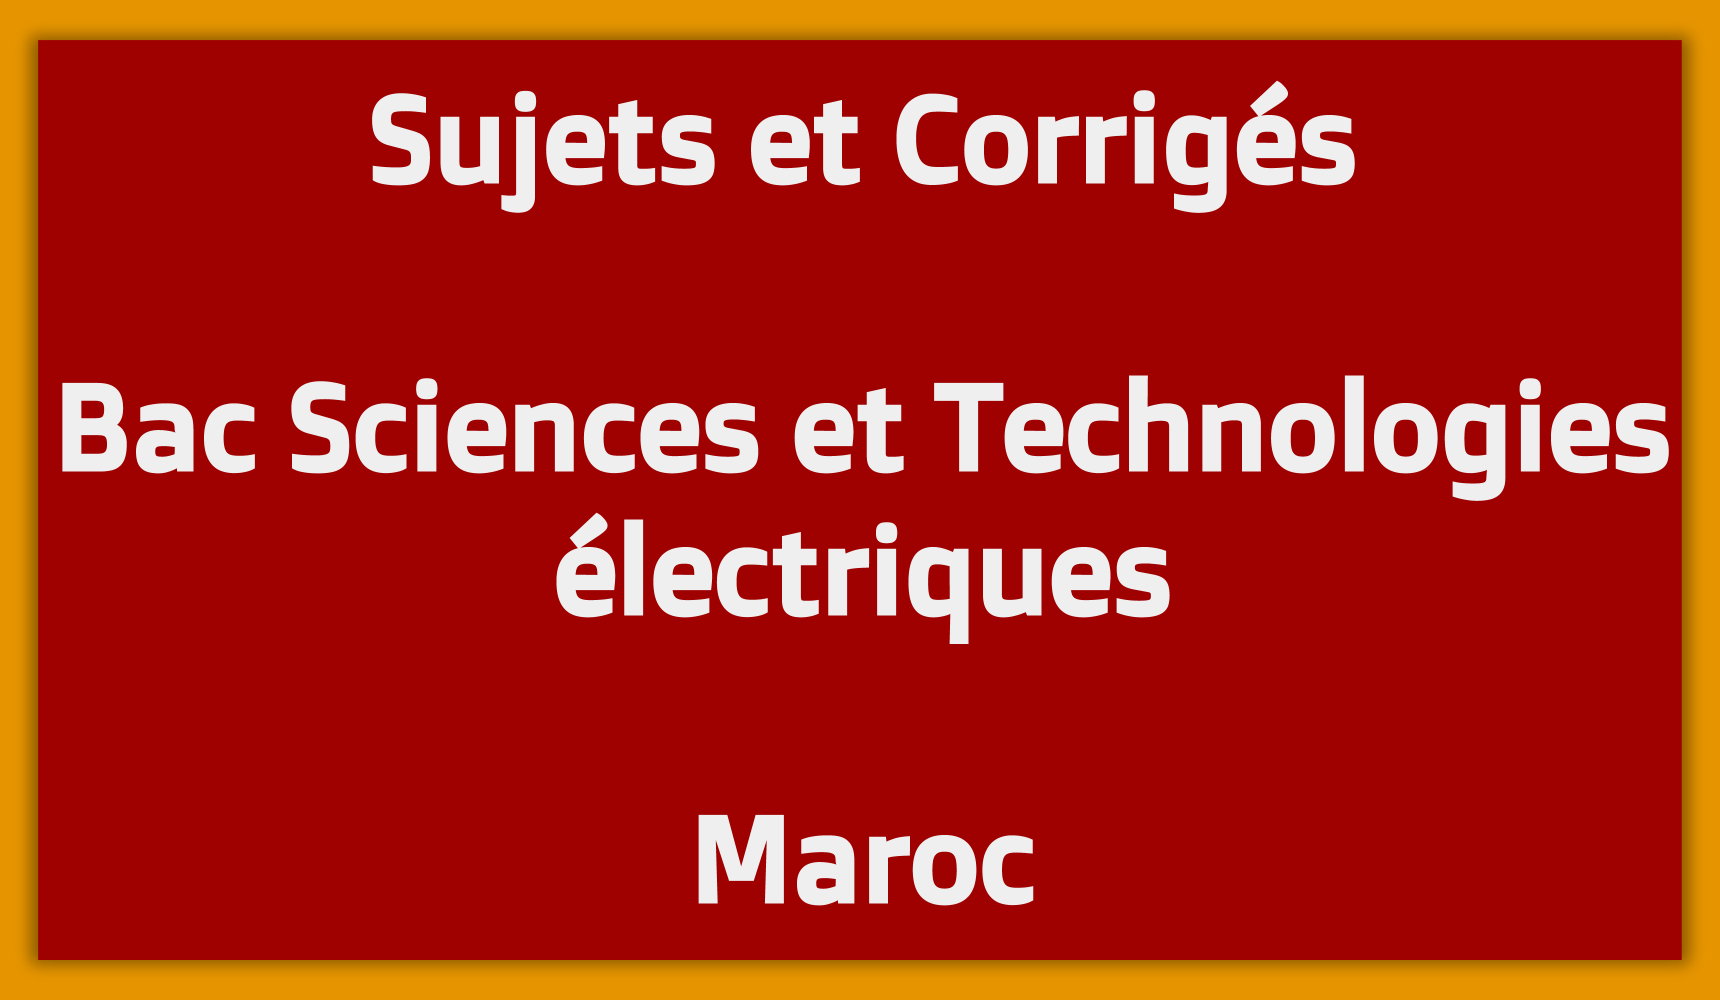 Sujets Corrigés Bac Sciences et Technologies électriques Maroc